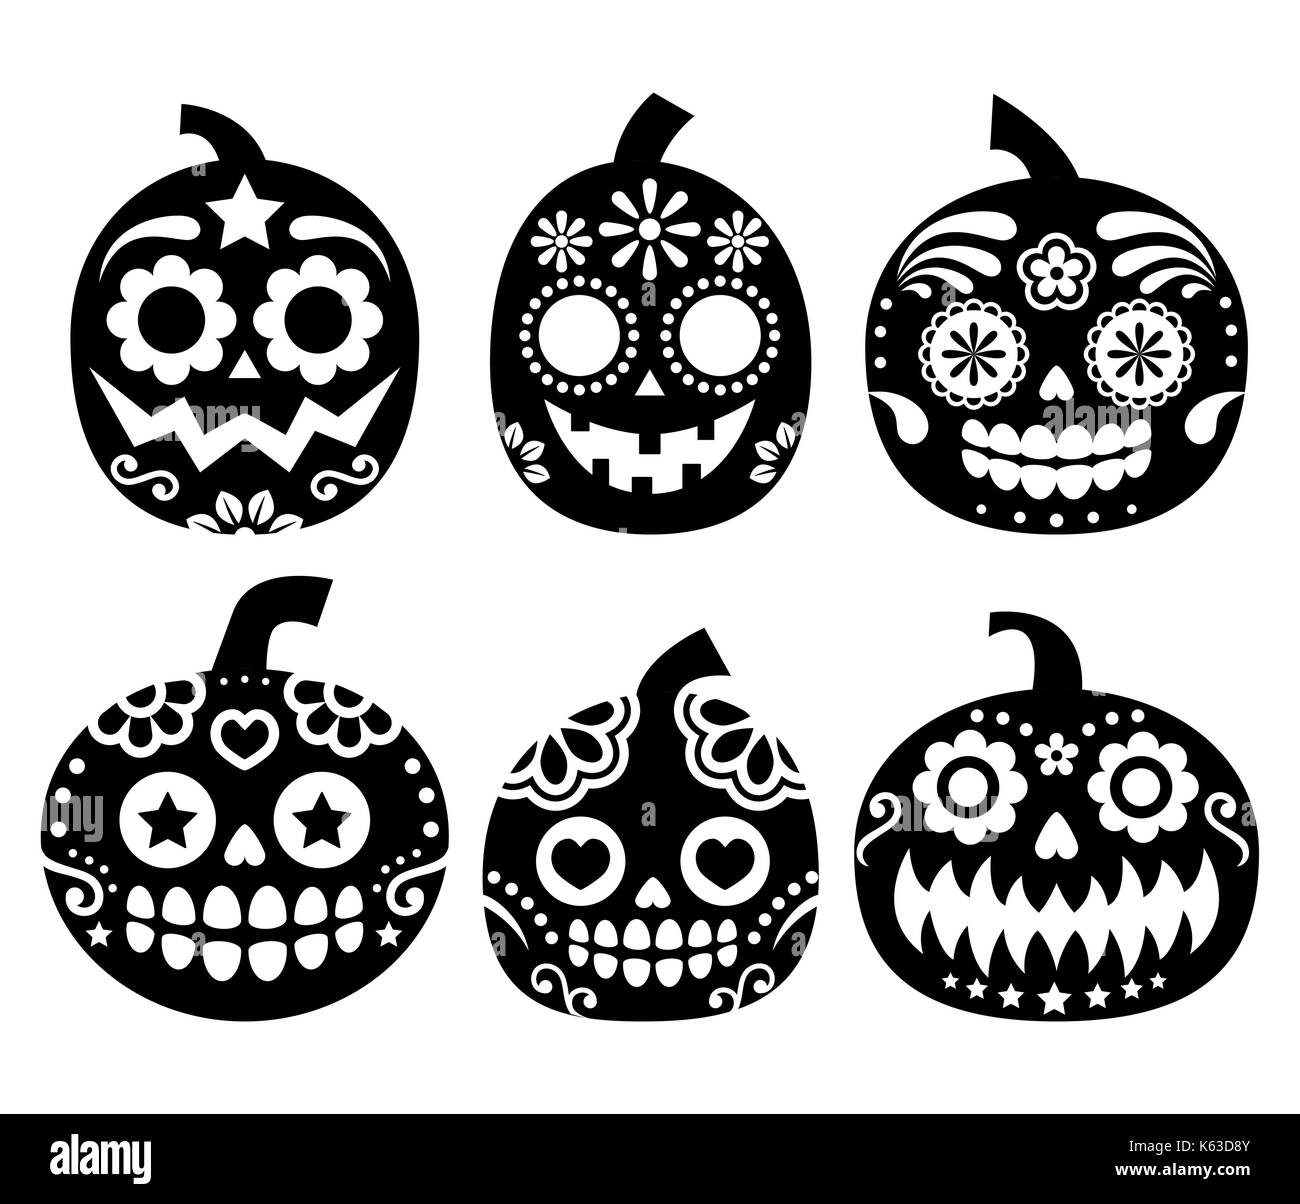 Vecteur de citrouille halloween - desgin style mexicain crâne en sucre, dia de los muertos decoration Illustration de Vecteur